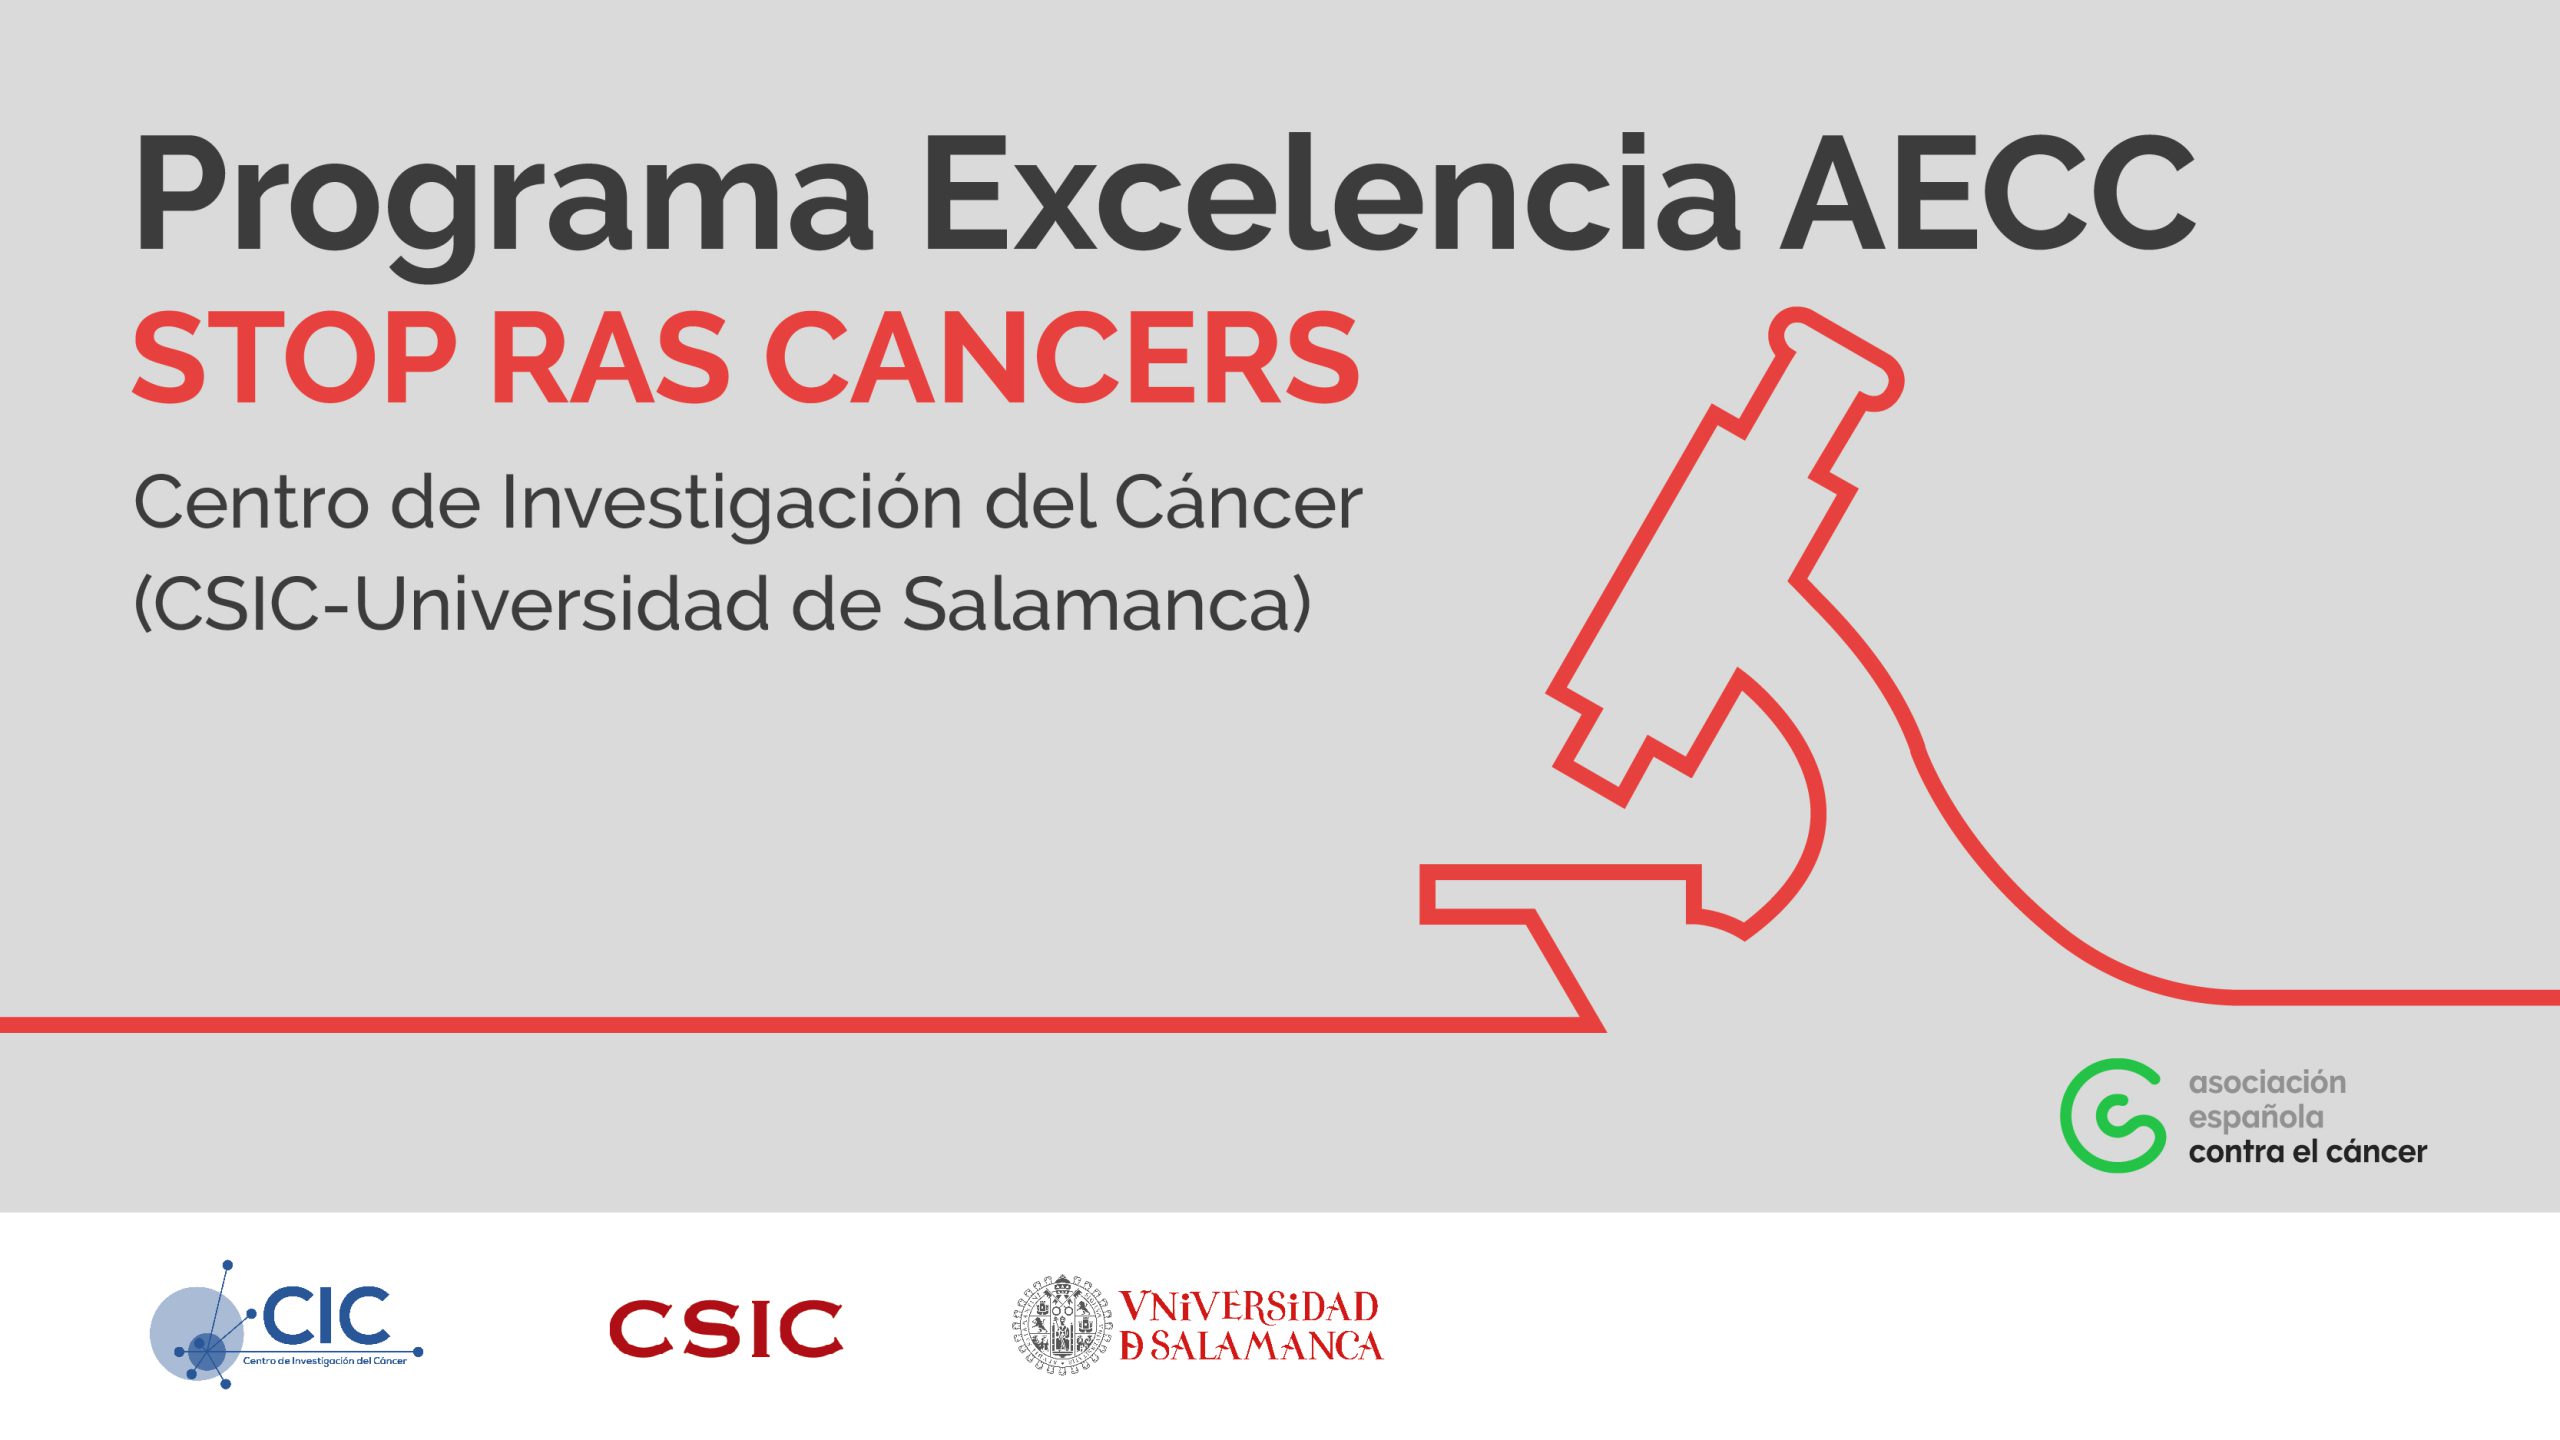 Programa Excelencia AECC Stop RAS Cancers de la Asociación Española Contra el Cáncer